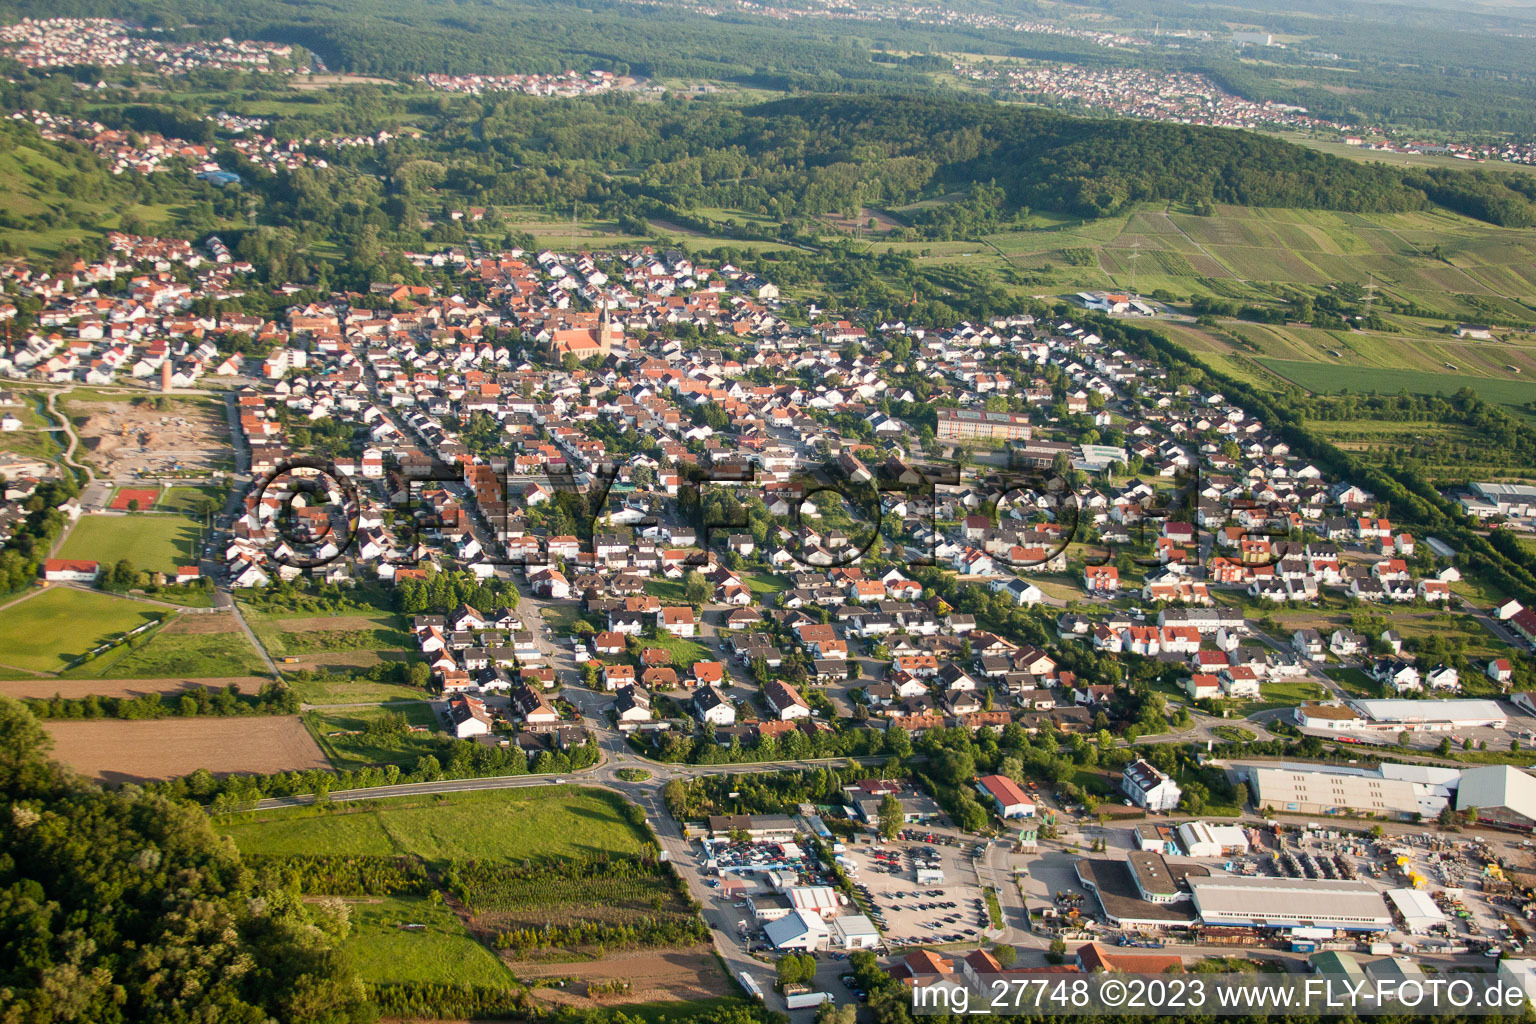 Luftbild von Rauenberg im Bundesland Baden-Württemberg, Deutschland